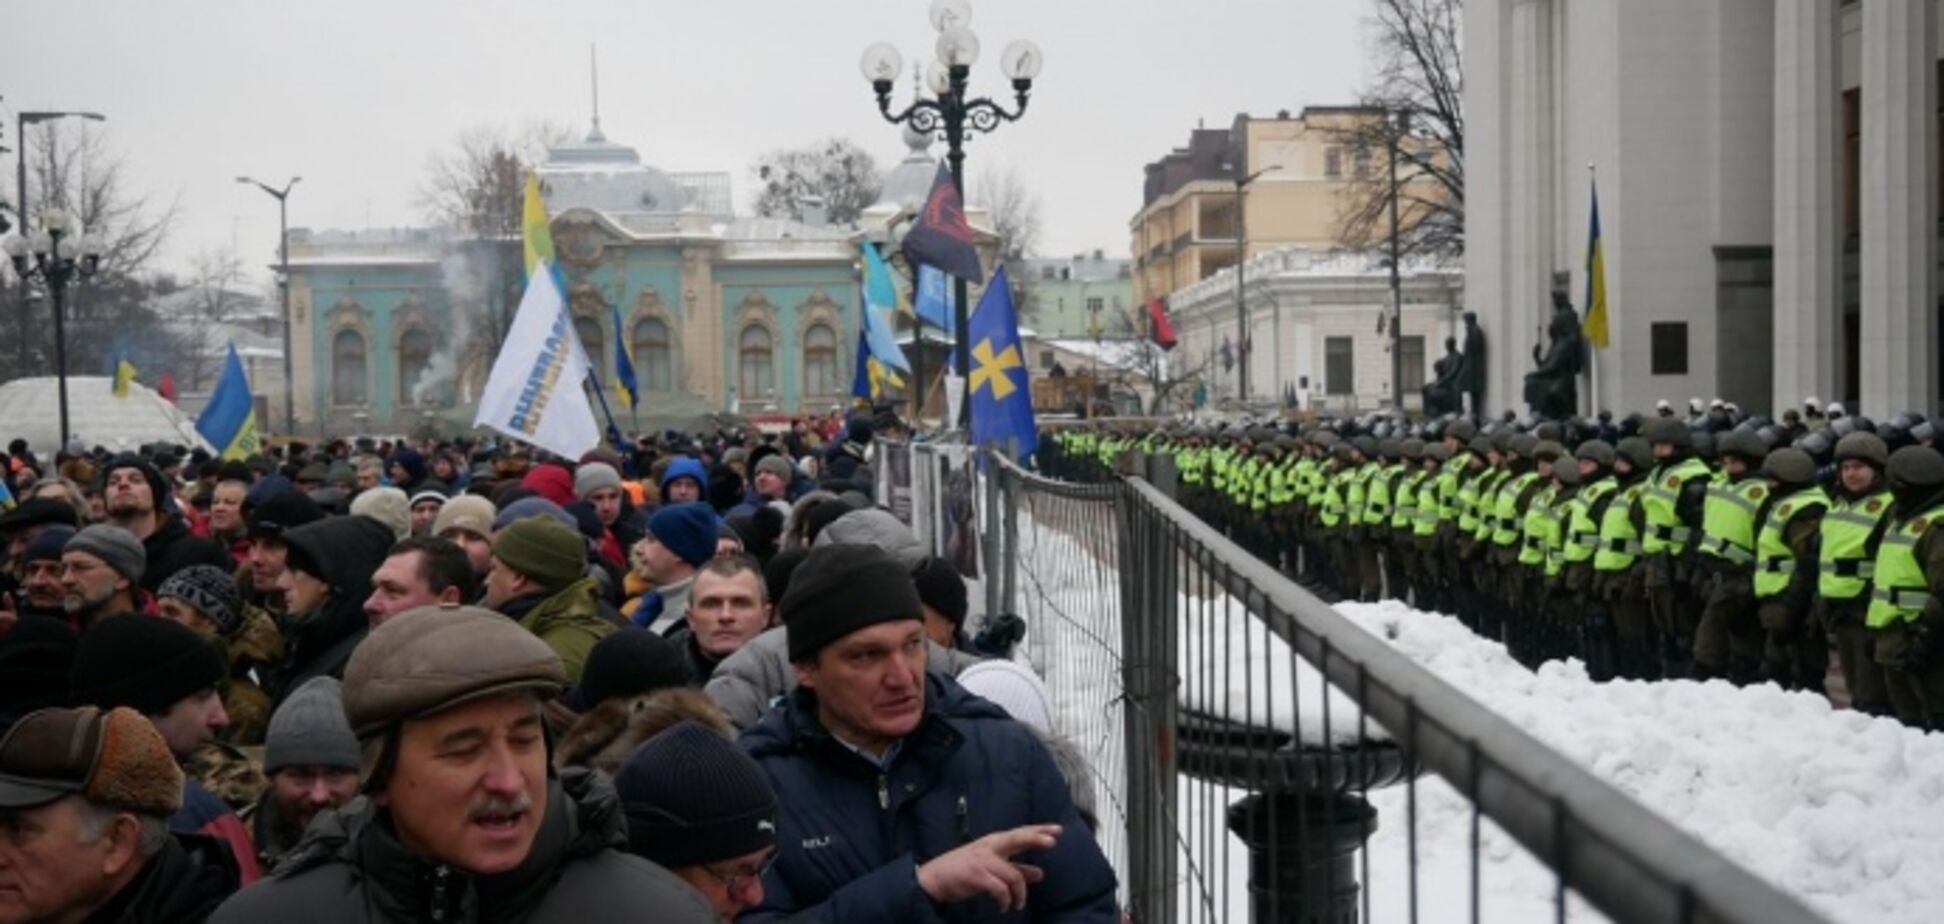 Увидели 'штурм': сторонники Саакашвили устроили бунт под Радой